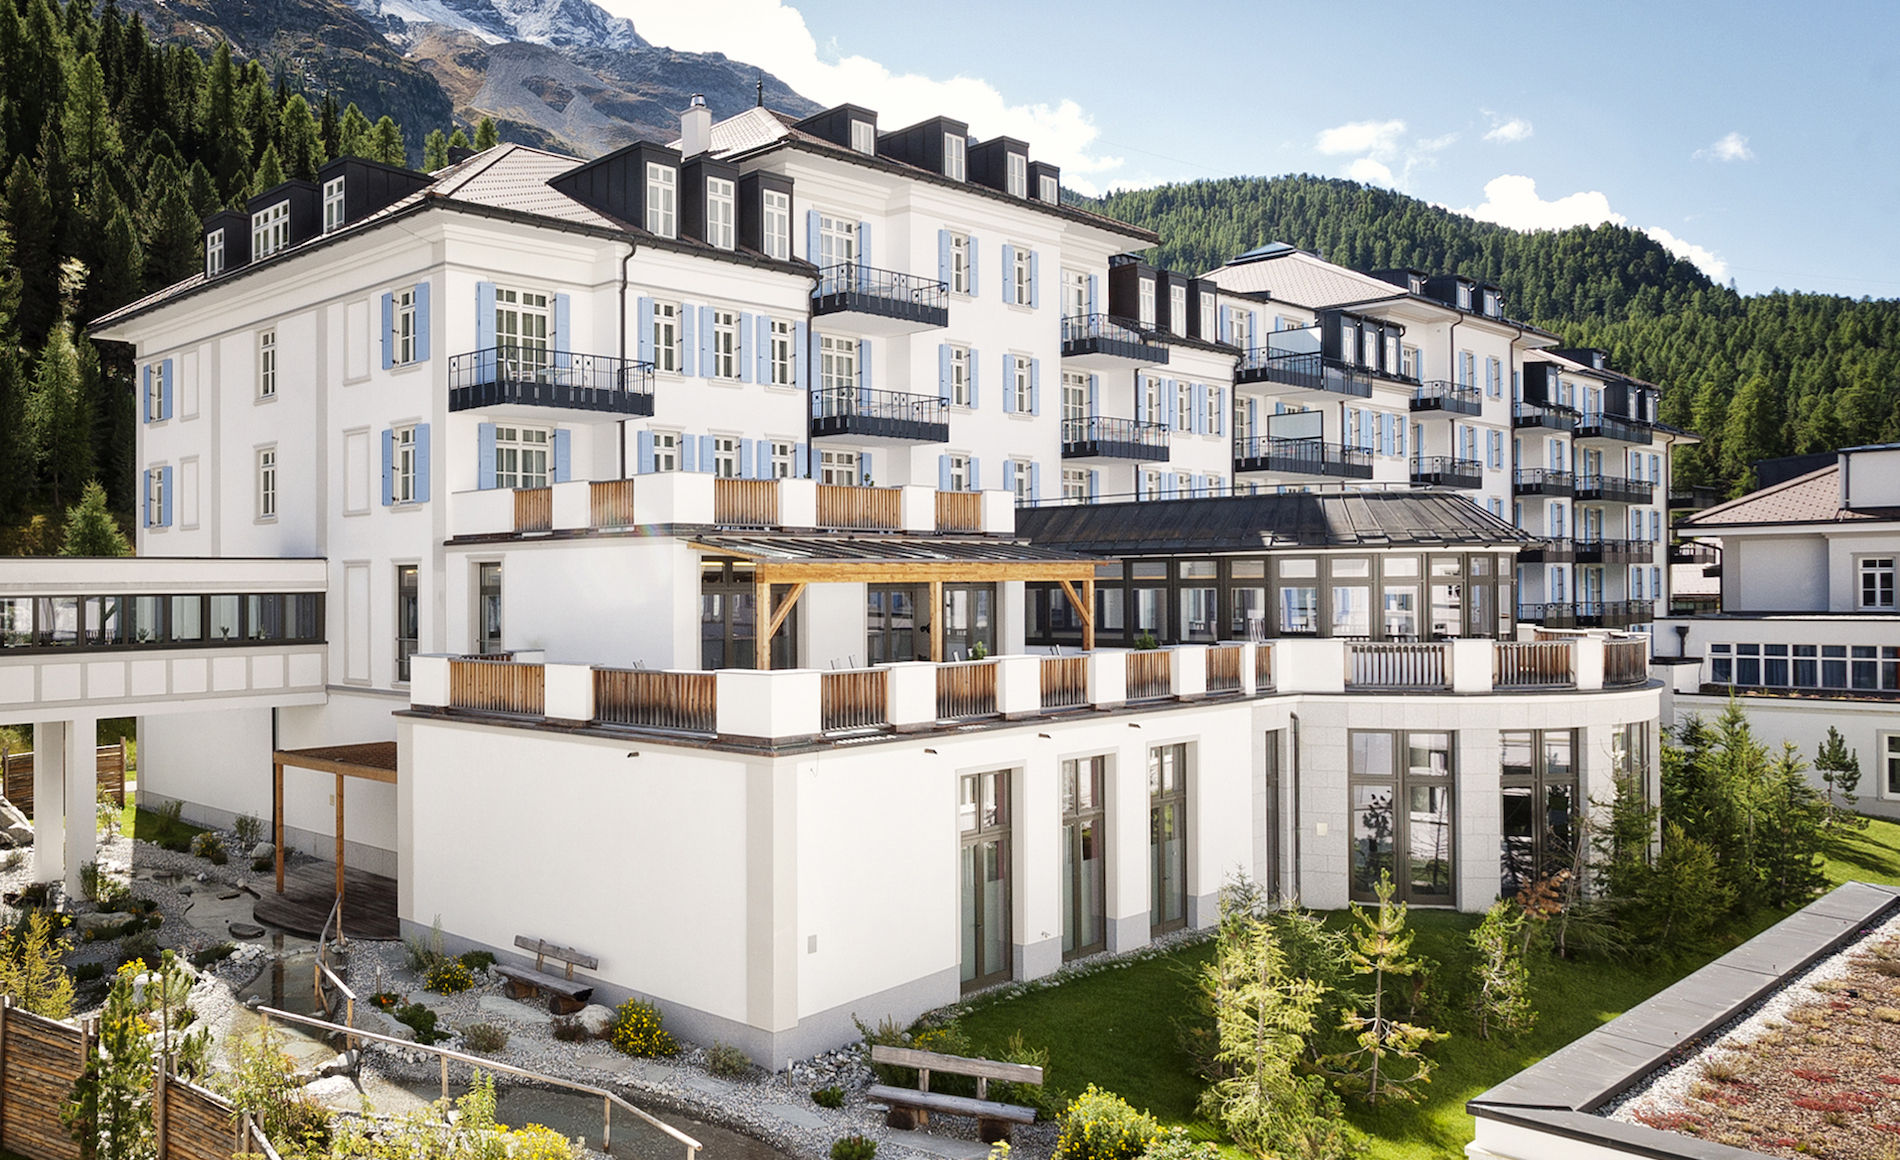 Grand Hotel des Bains Kempinski St Moritz